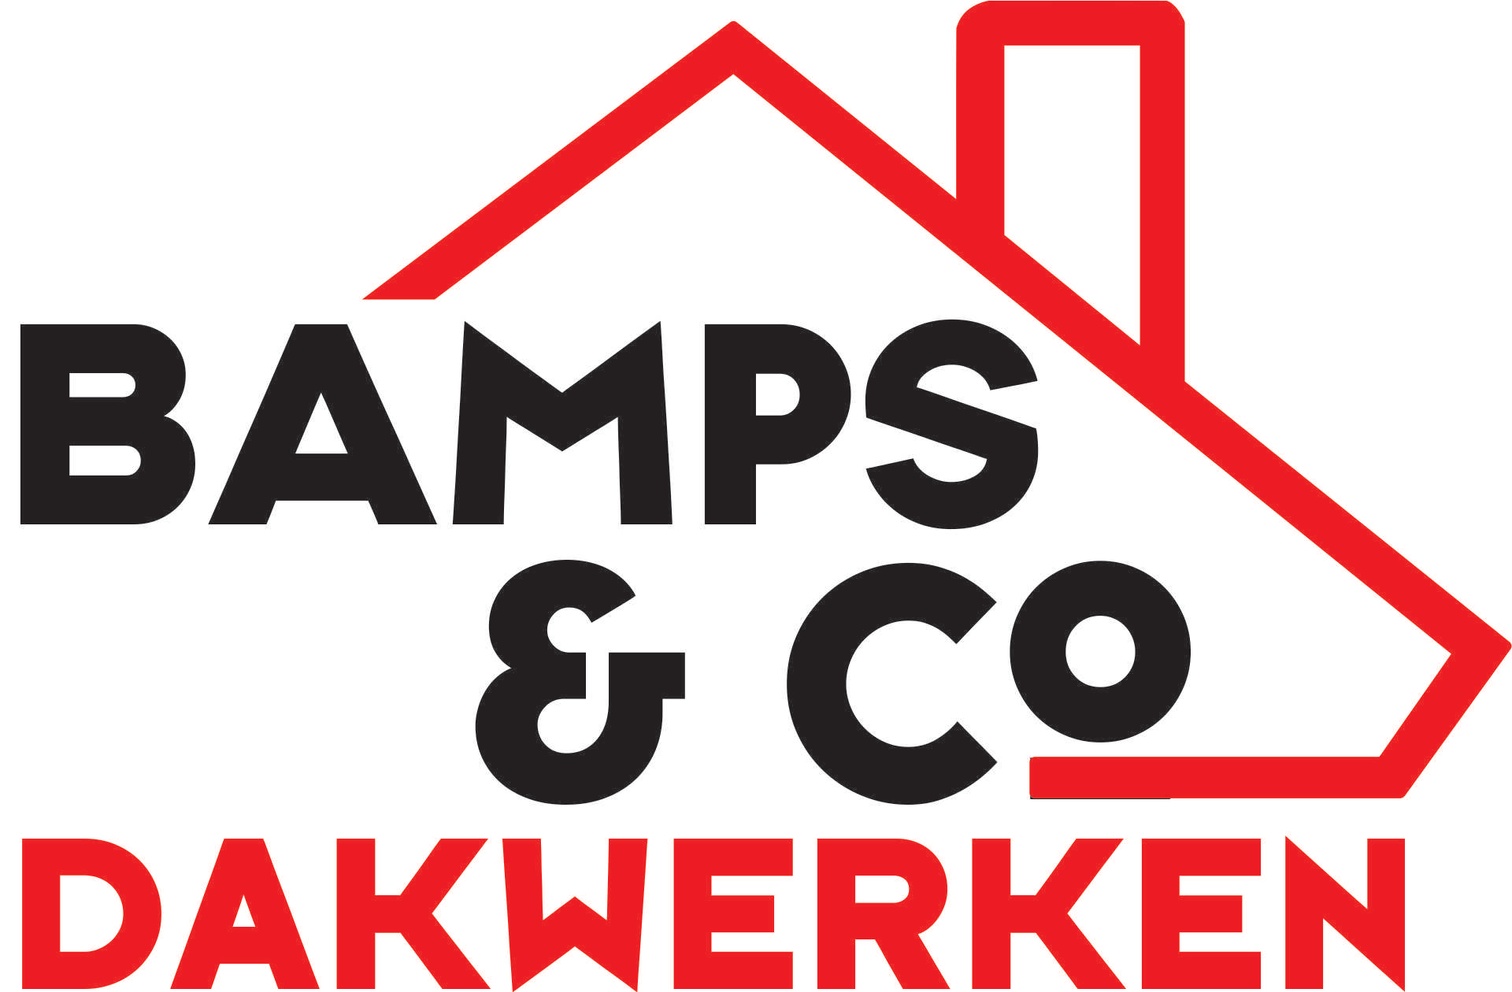 Dakwerken Bamps & Co bv logo